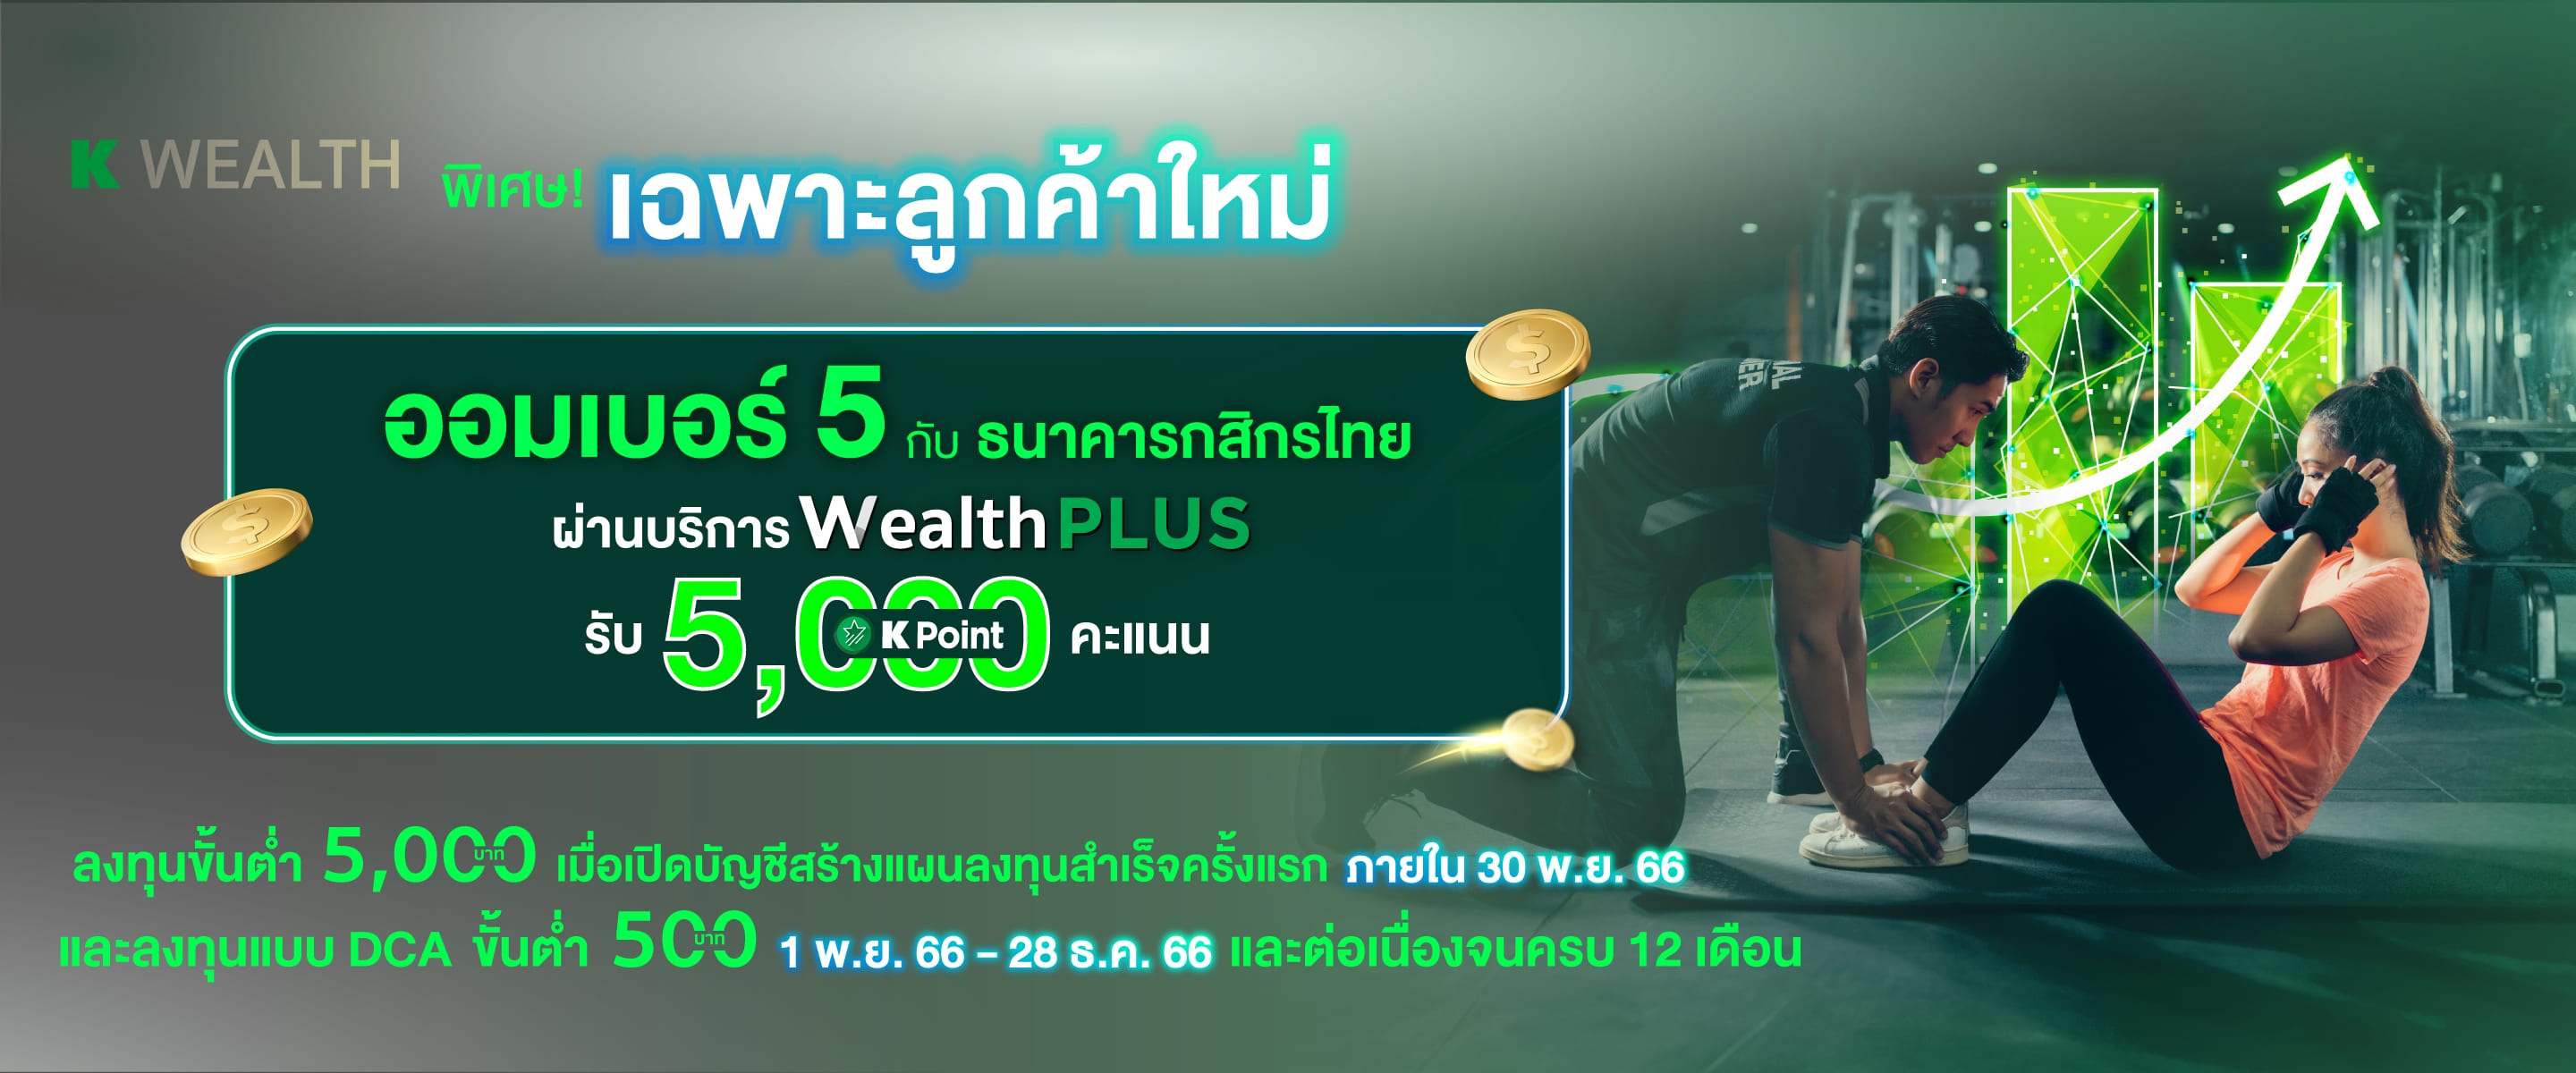 พิเศษ! เฉพาะลูกค้าใหม่ ออมเบอร์ 5 กับ ธนาคารกสิกรไทยผ่านบริการ Wealth PLUS รับ K Point 5,000 คะแนน